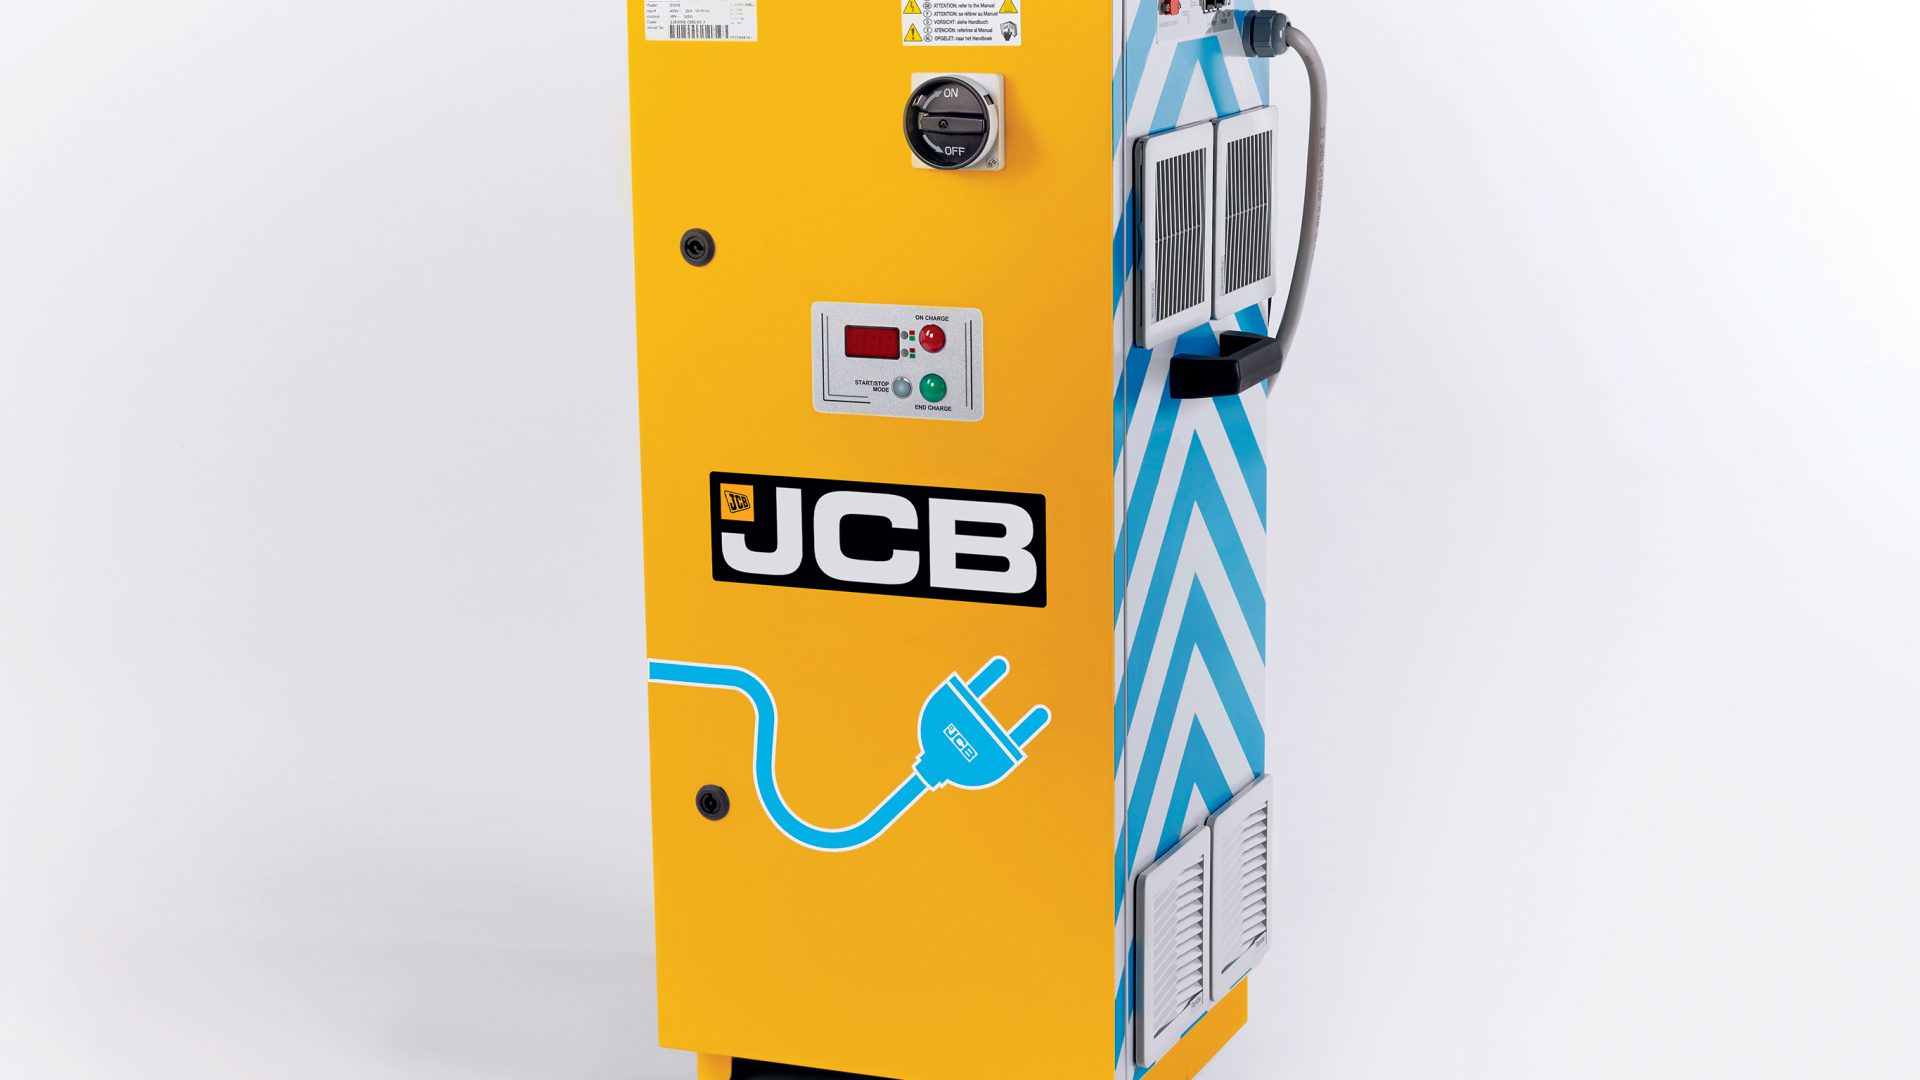 jcb electrification